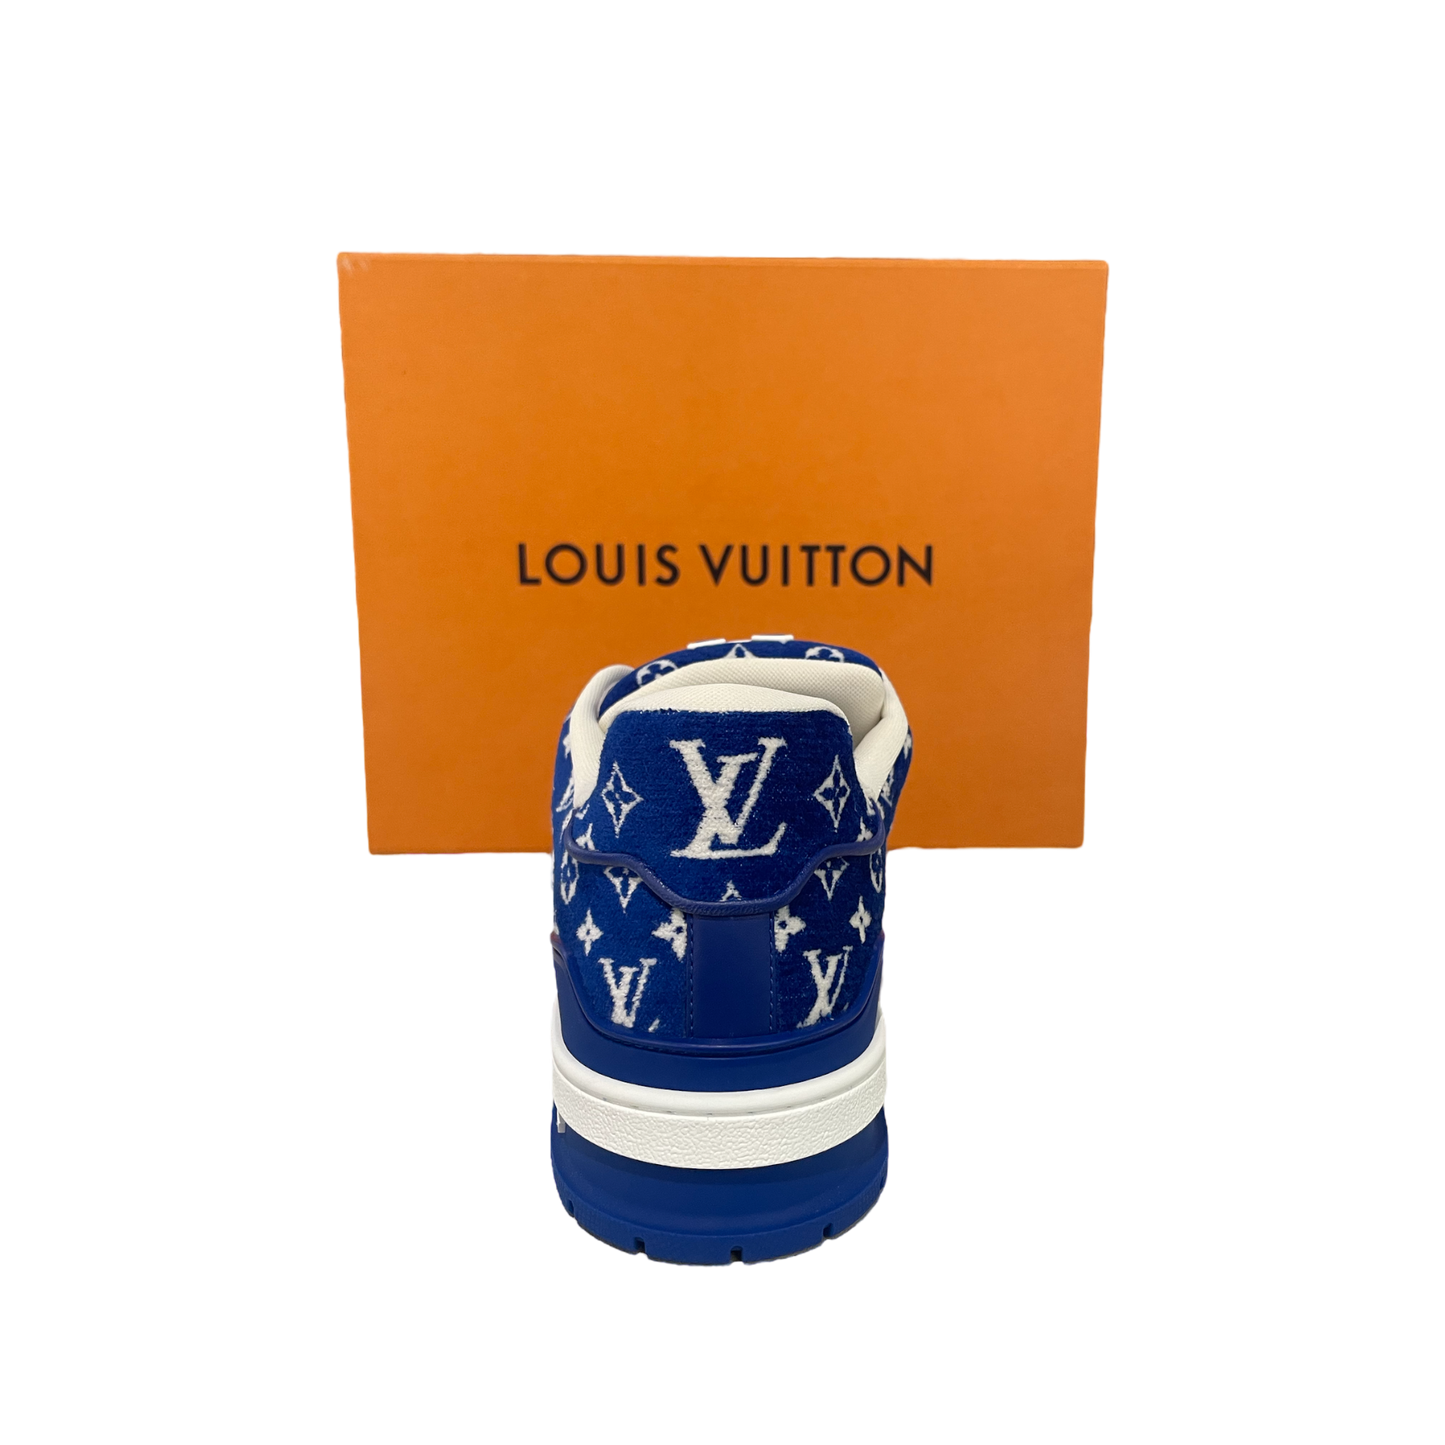 Louis Vuitton Trainer Blue Monogram Textile - Store Exclusive